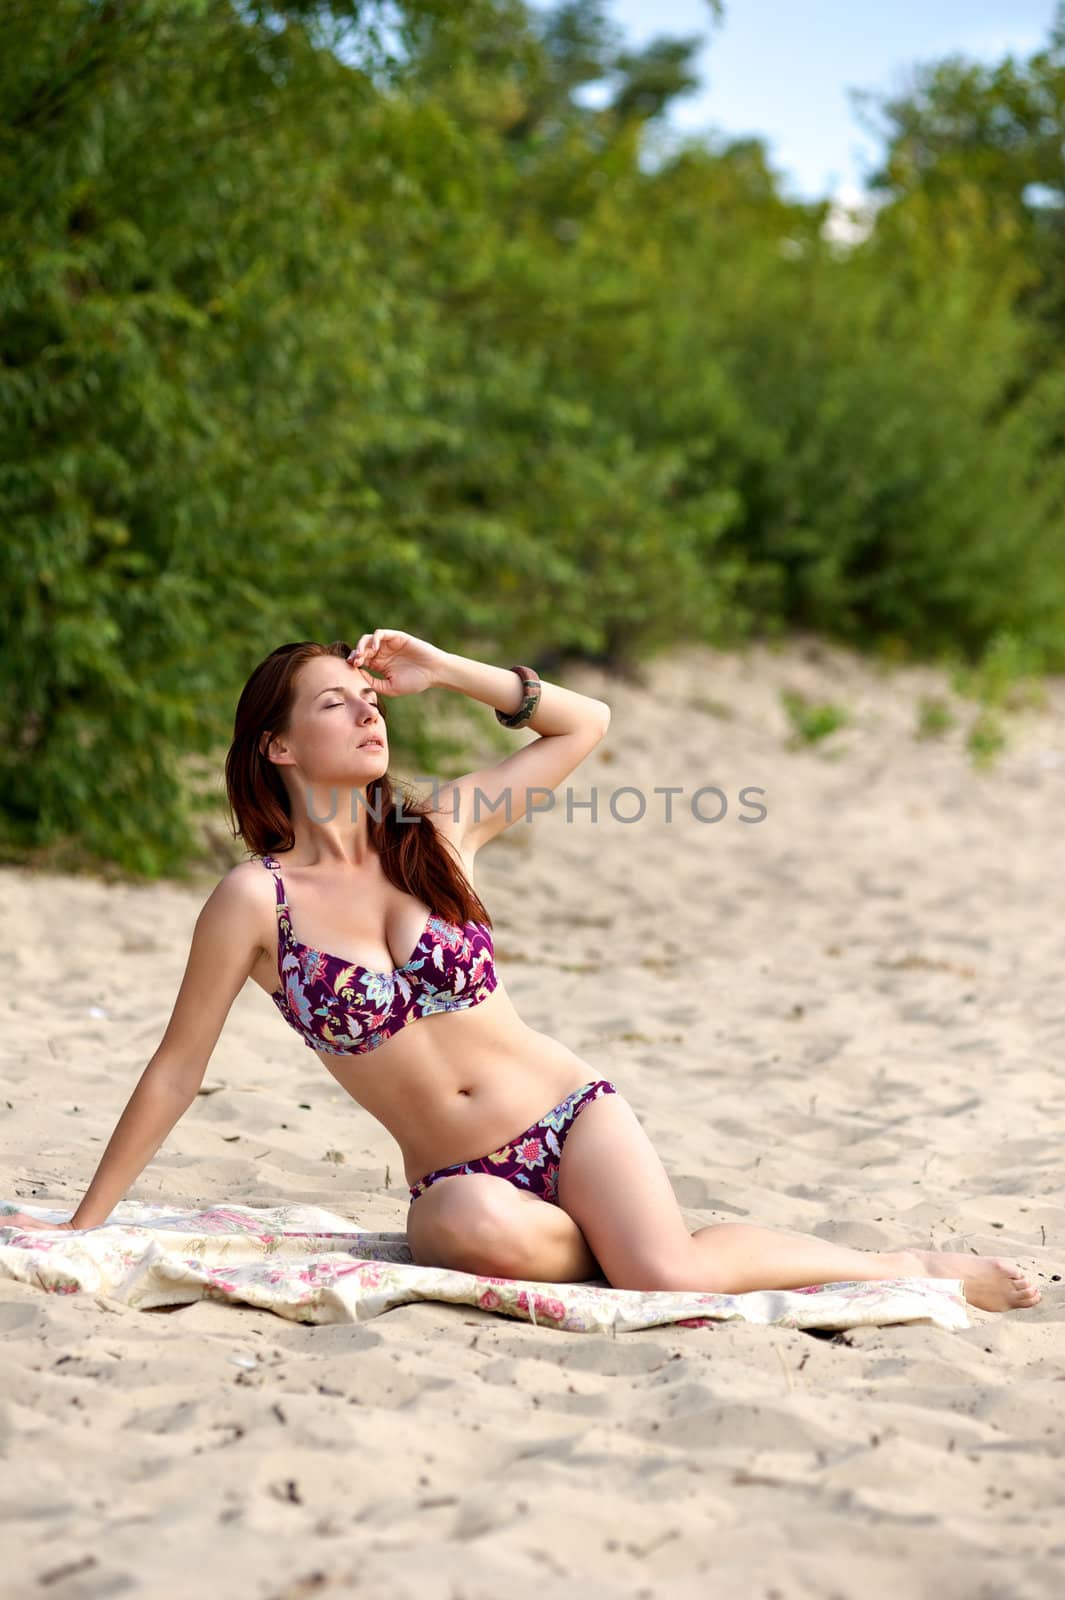 Young woman sunbathing on the beach in bikini alone